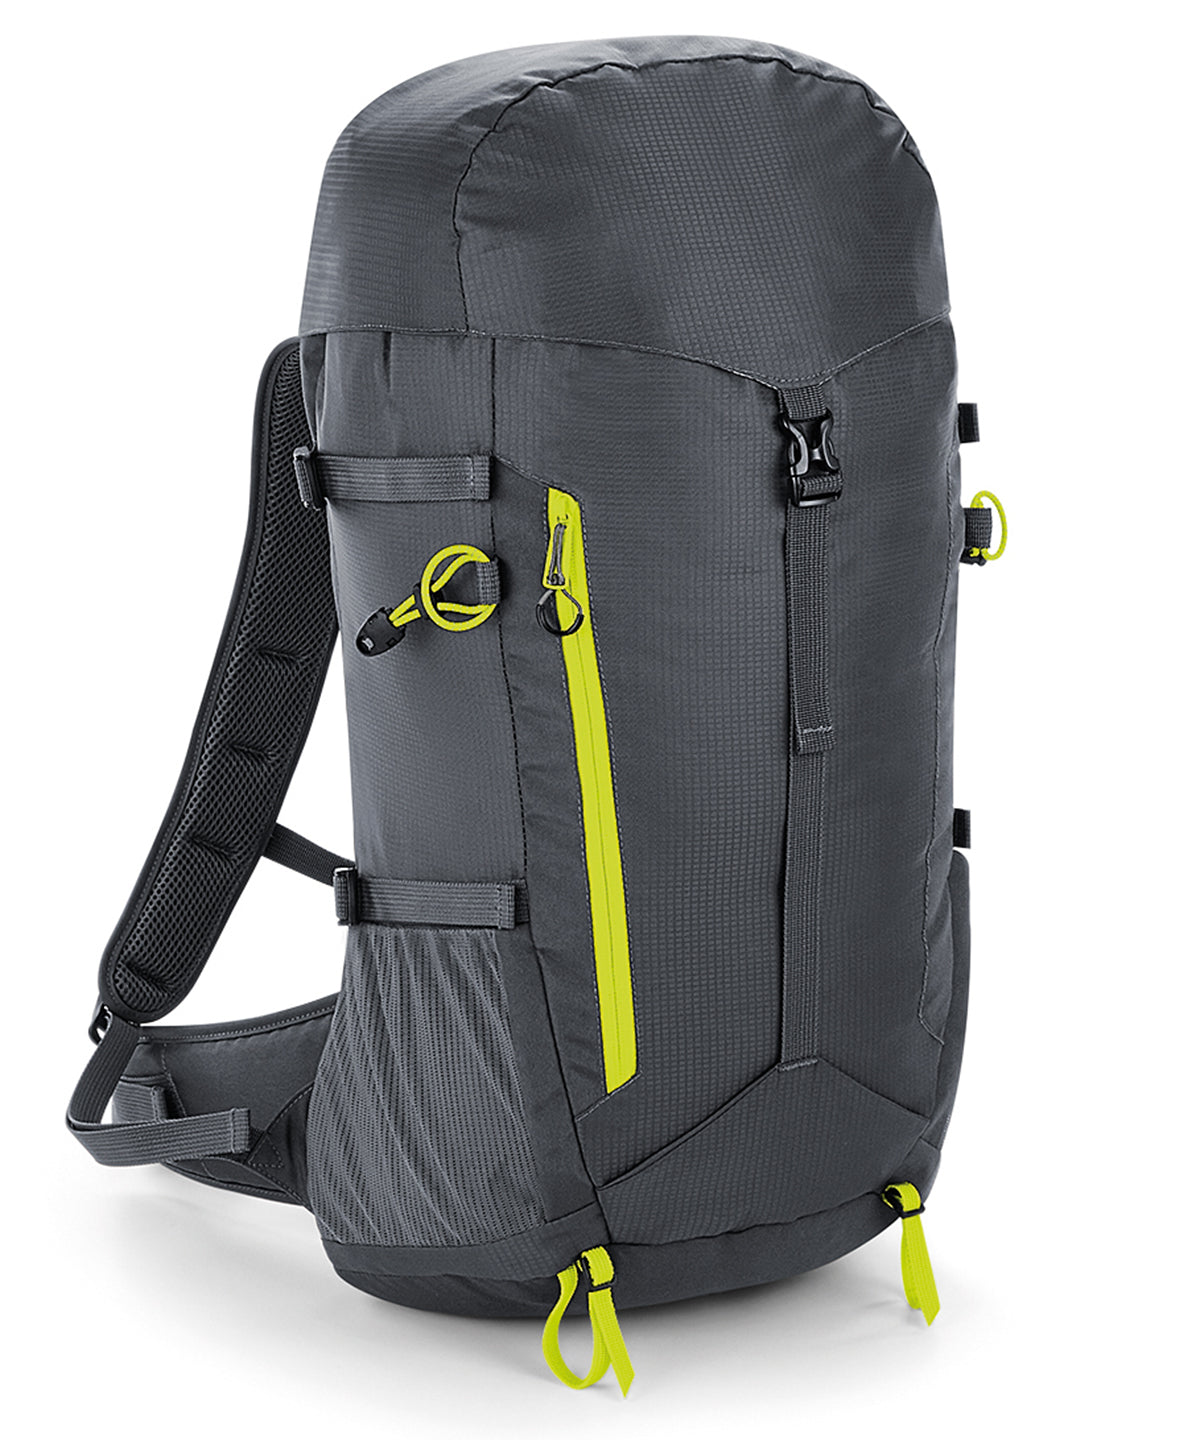 Töskur - SLX®-lite 35 Litre Backpack